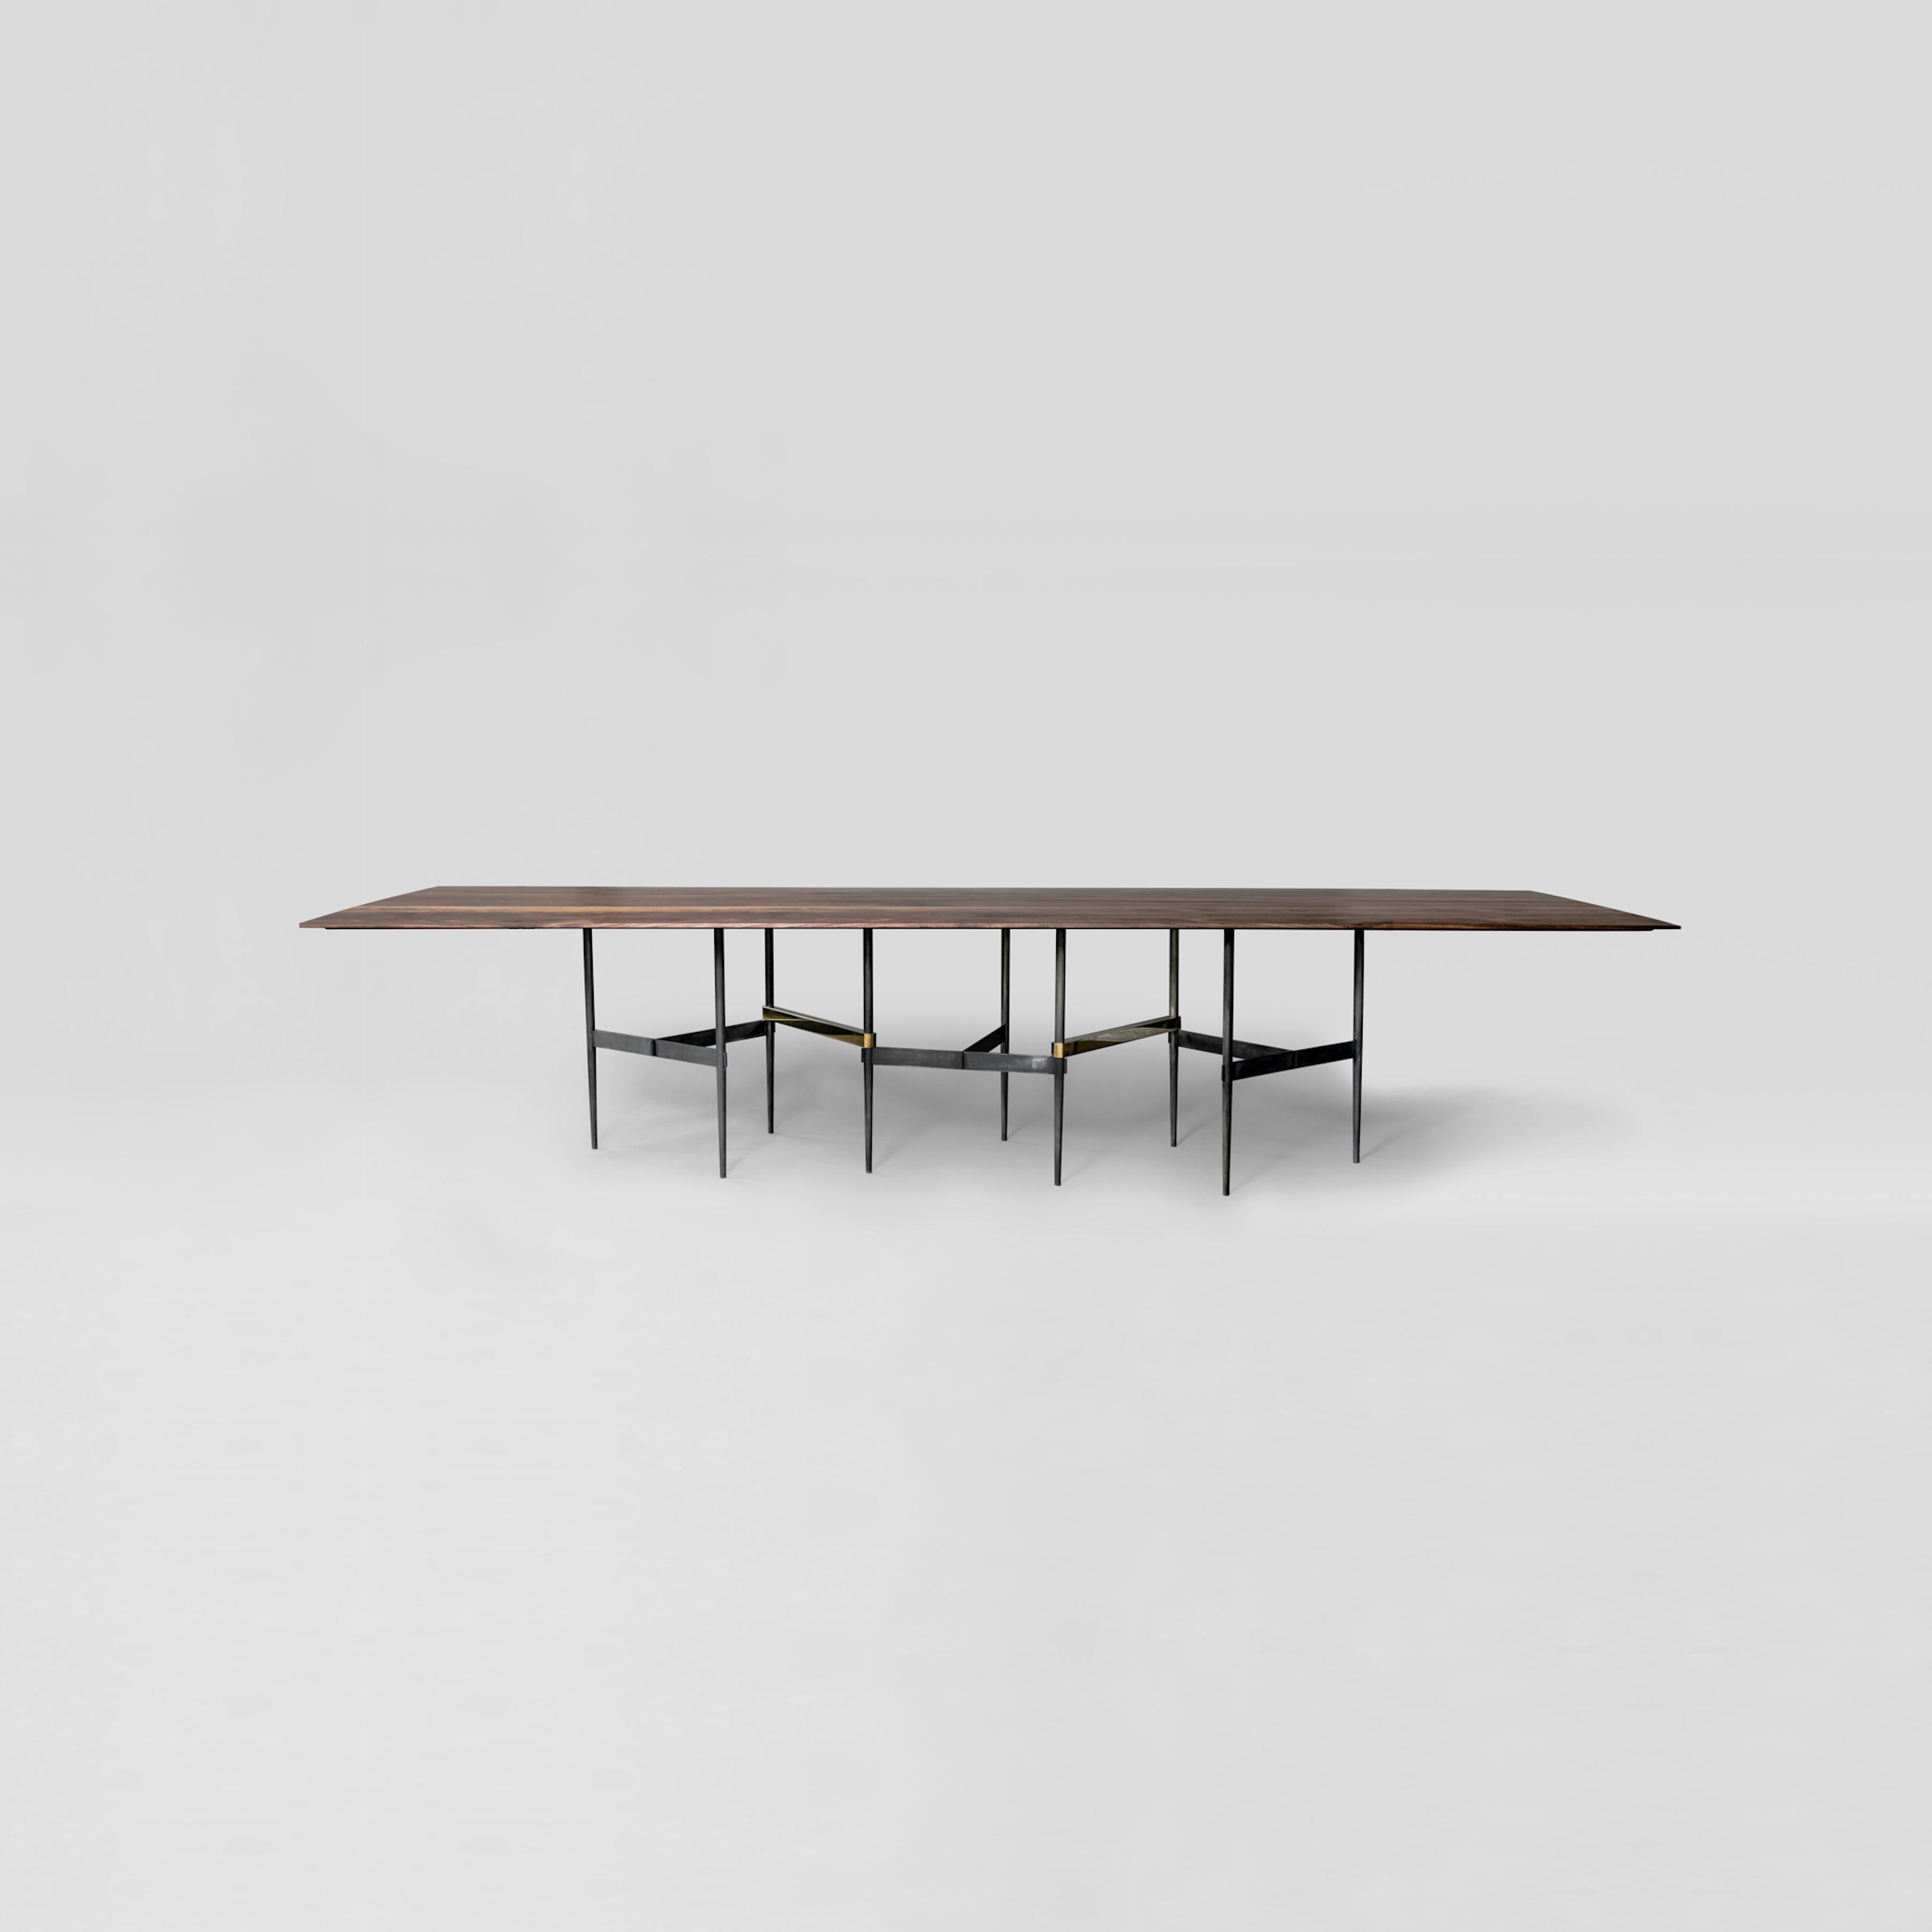 Table Zigzag d'Atra Design.
Dimensions : D 280 x L 110 x H 73,6 cm.
Matériaux : bois de noyer, laiton, acier.
Disponible dans d'autres matériaux et tailles.

Atra Design
Nous sommes Atra, une marque de meubles produite par Atra form A, un site de